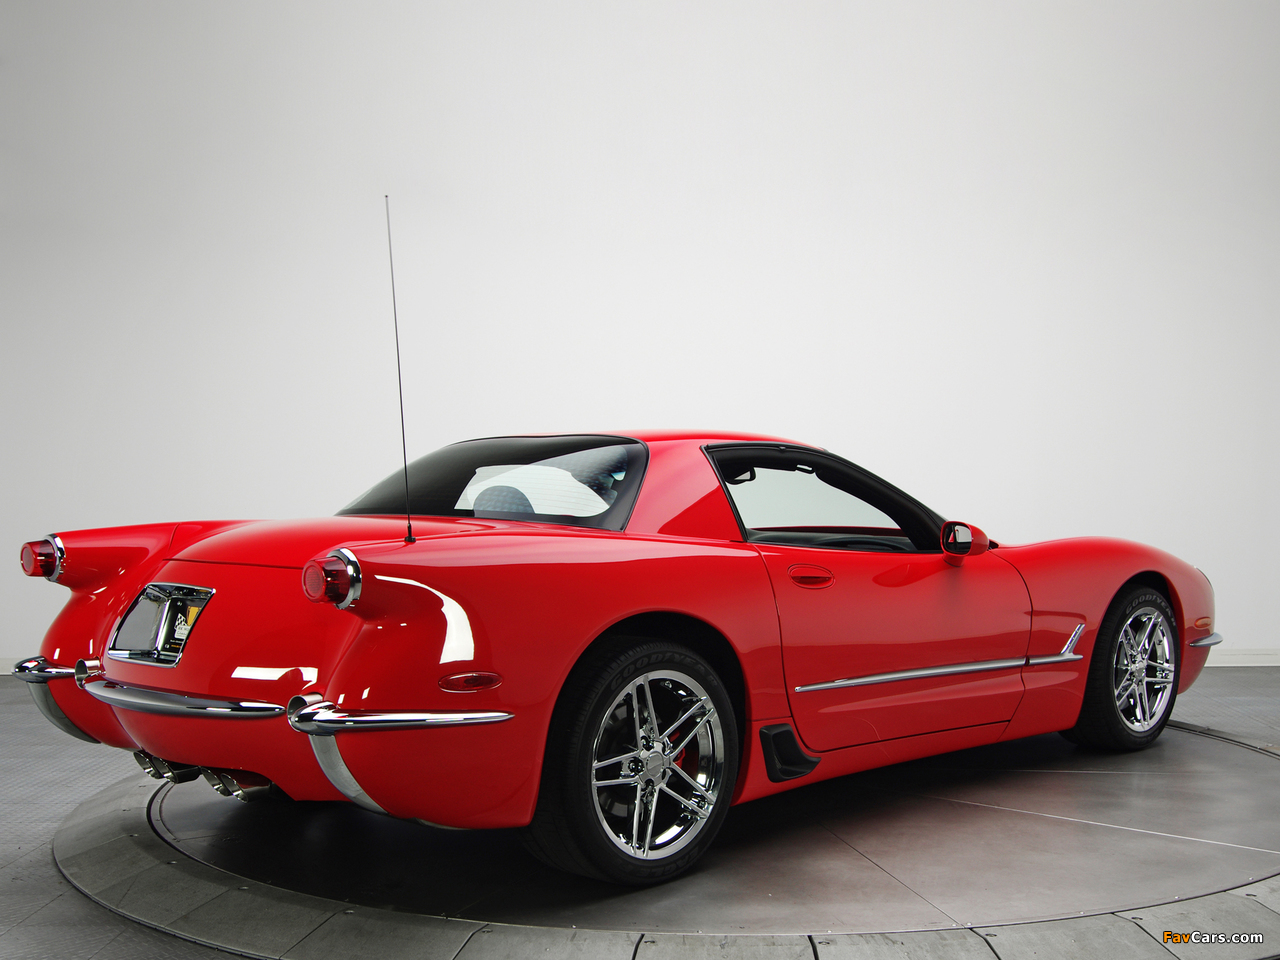 Corvette Z06 1953 Commemorative Edition (C5) 2001 pictures (1280 x 960)